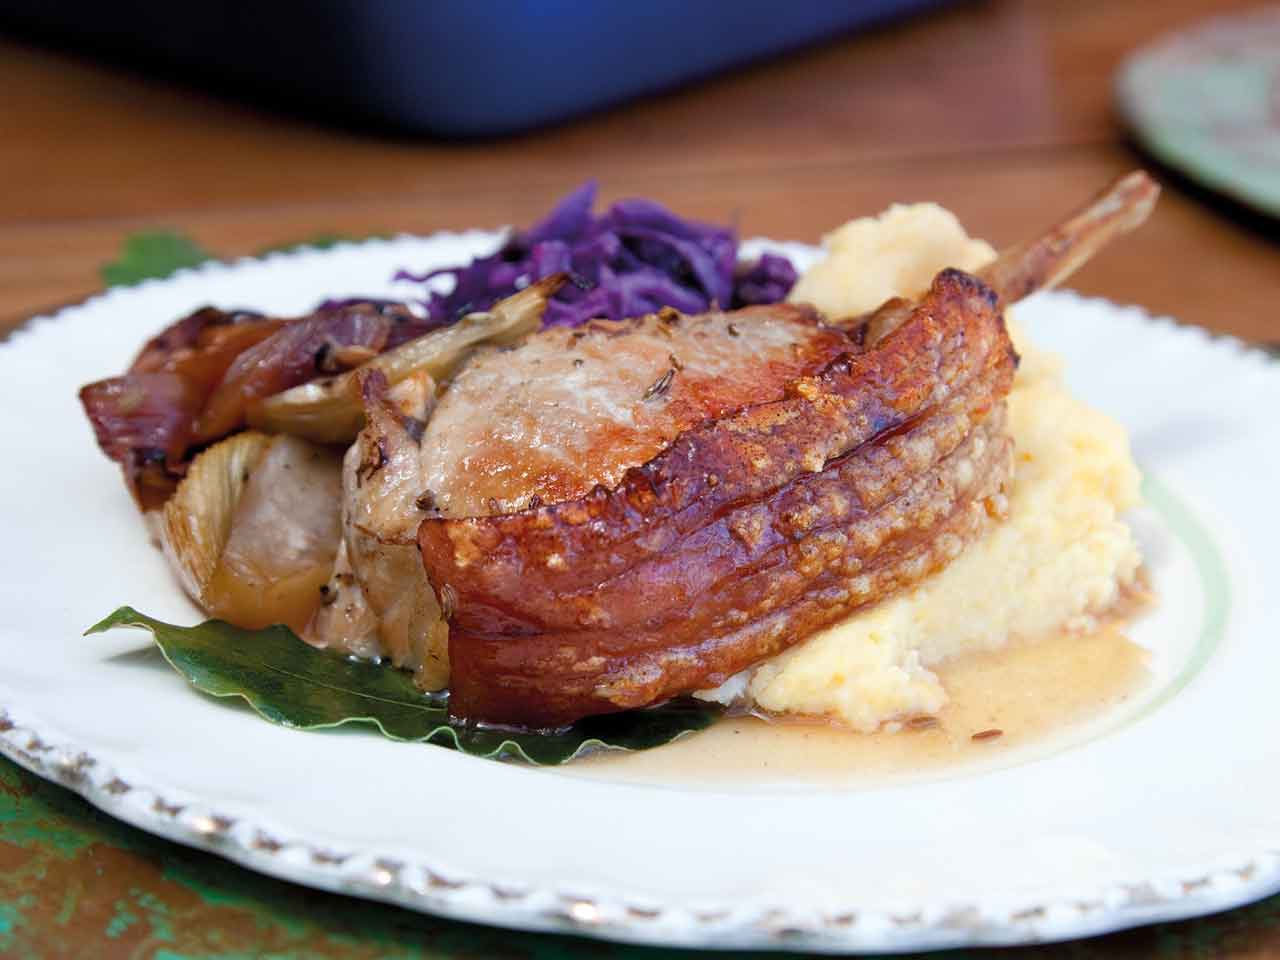 Annabel Langbein's roast pork with fennel